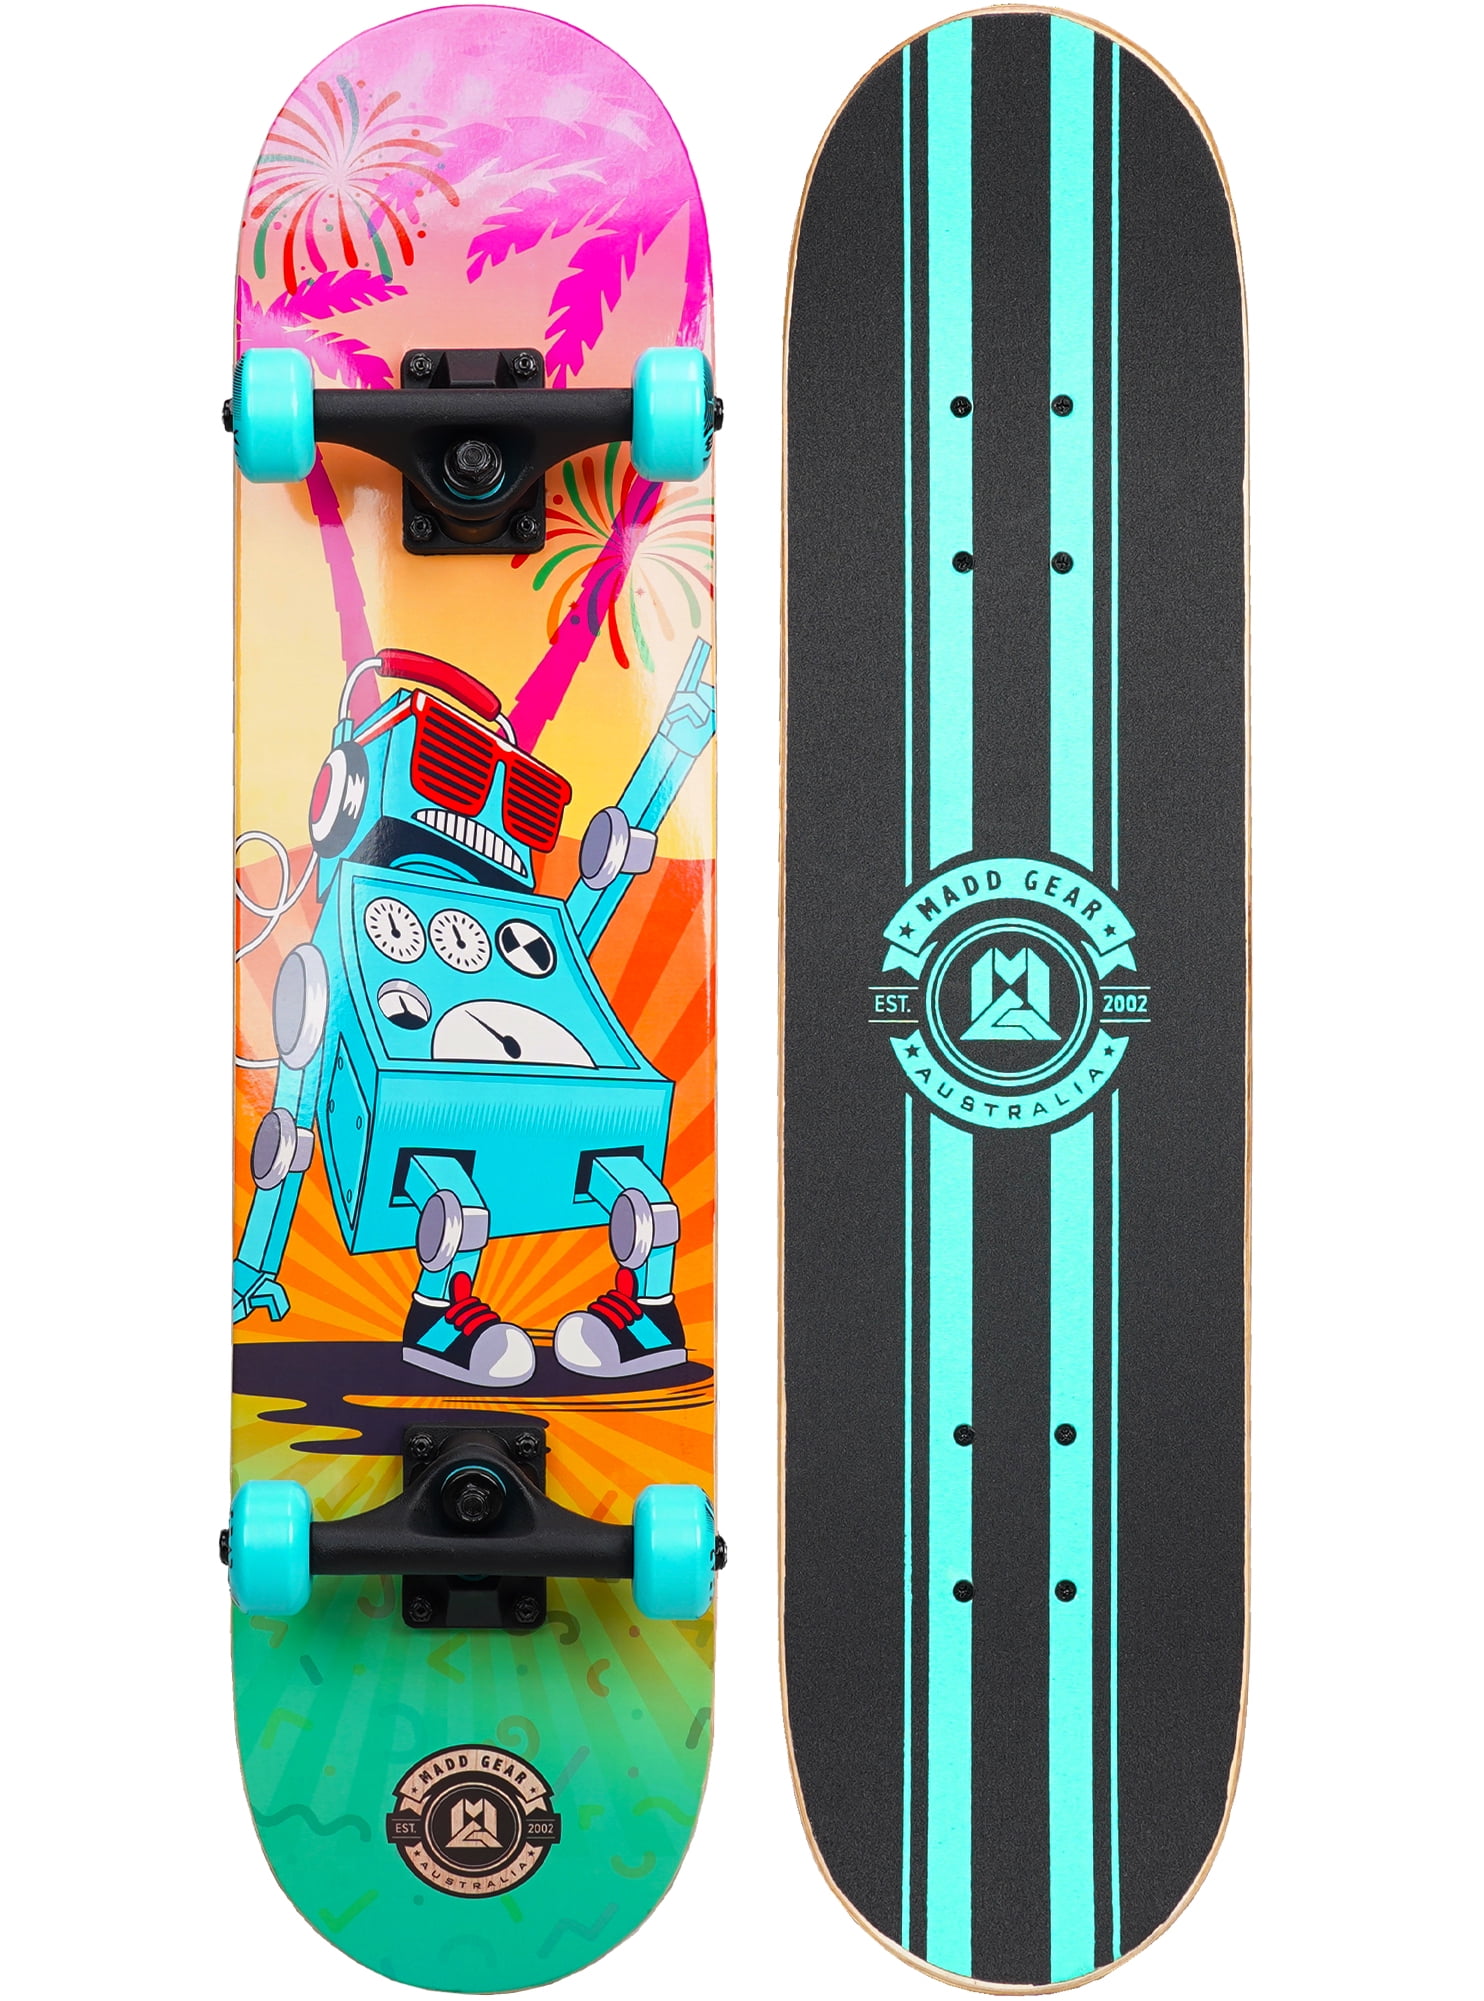 Verenigde Staten van Amerika Kustlijn Orthodox Madd Gear 31 x 7 Inch Double Kicktail Beginner Complete Skateboard with  Maple Deck - Walmart.com